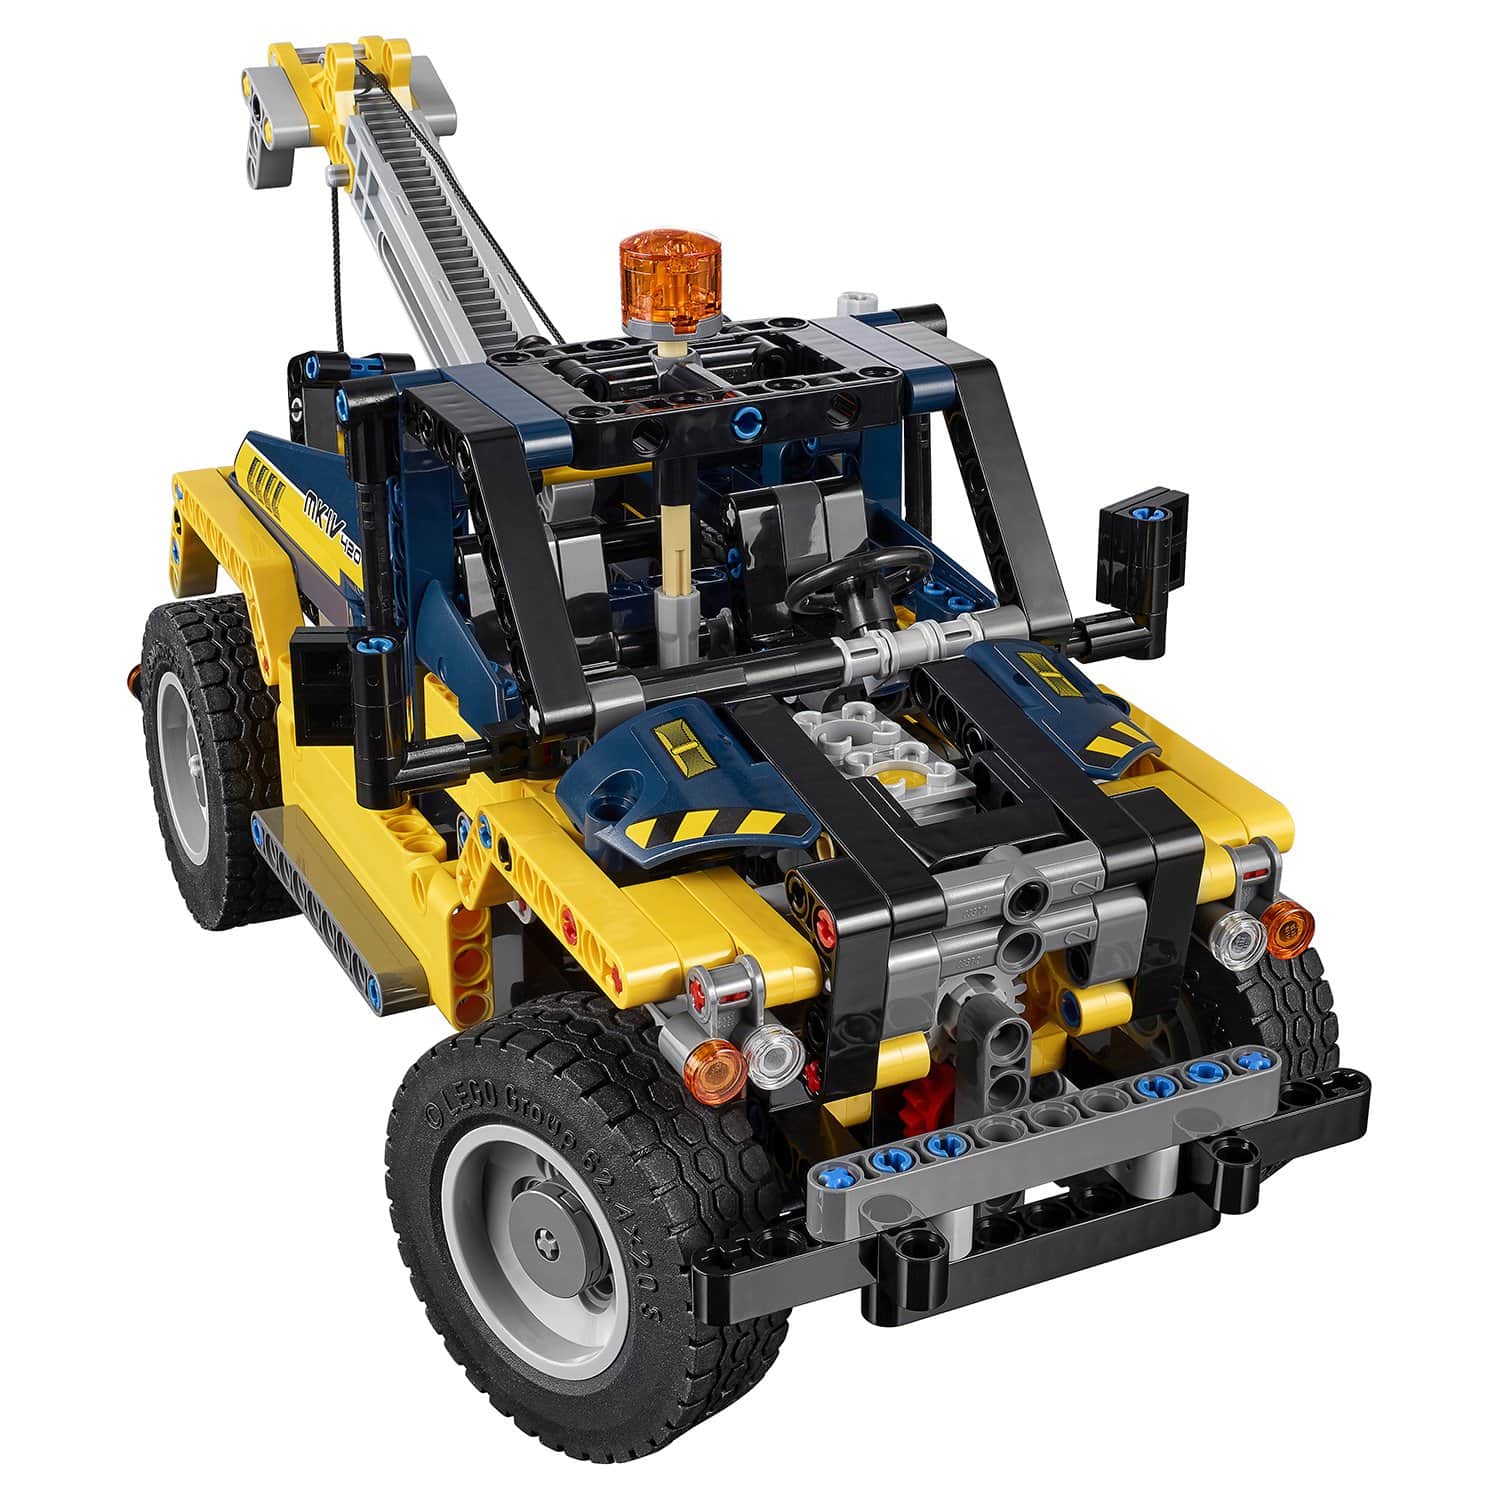 Конструктор LEGO Technic 42079 Сверхмощный вилочный погрузчик